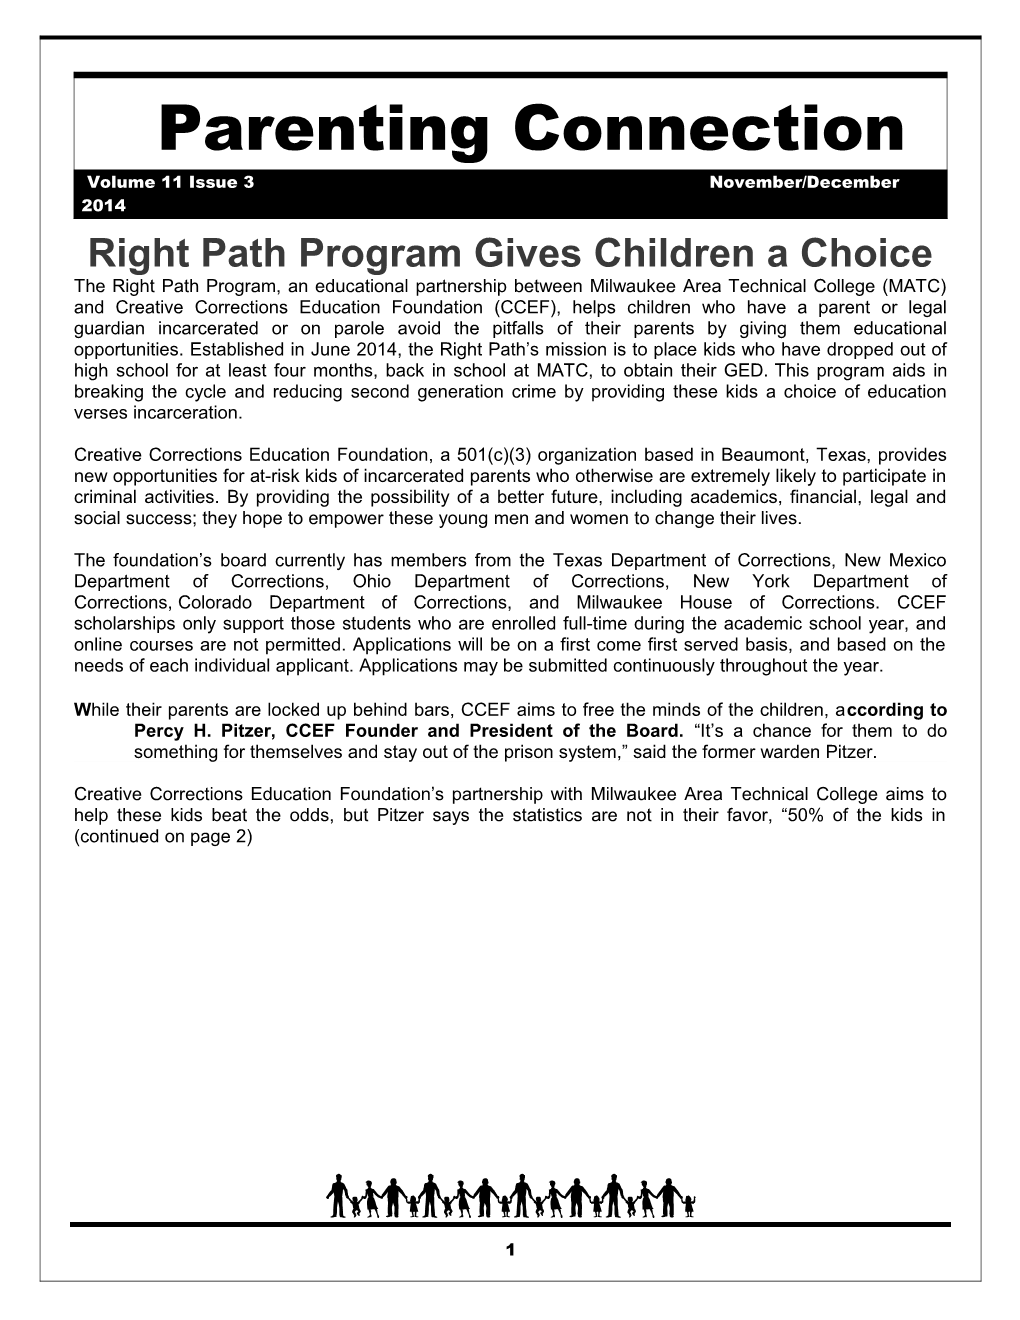 Right Path Program Giveschildren a Choice